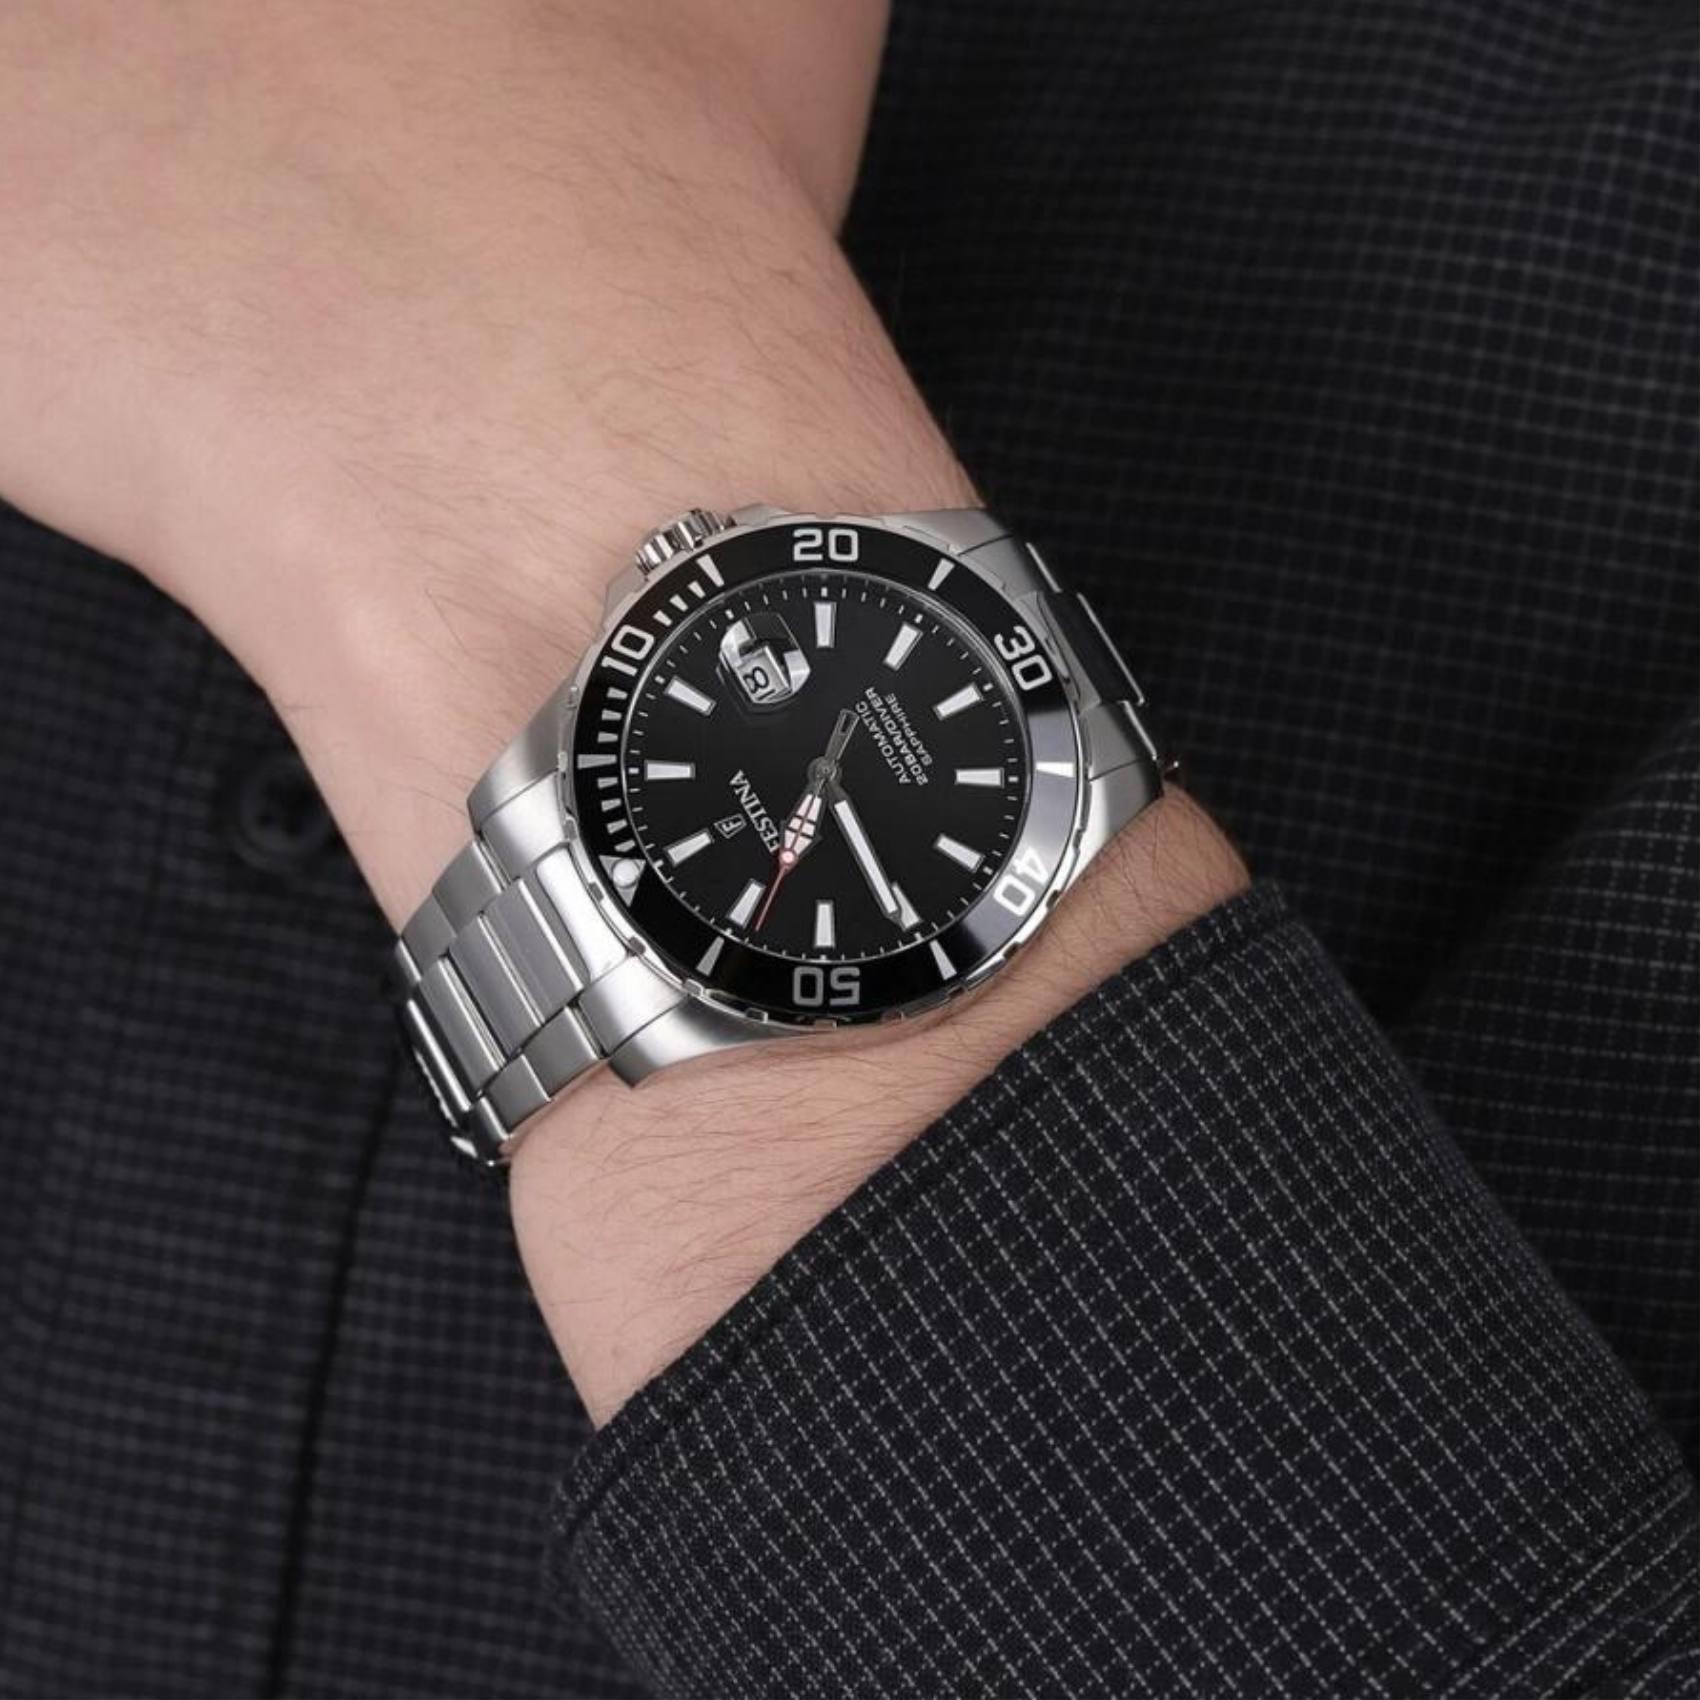 Καταδυτικό ρολόι Festina Diver F20531/4 με ασημί μπρασελέ, μαύρο καντράν με ένδειξη ημερομηνίας αυτόματο μηχανισμό και στεφάνι διαμέτρου 44mm.